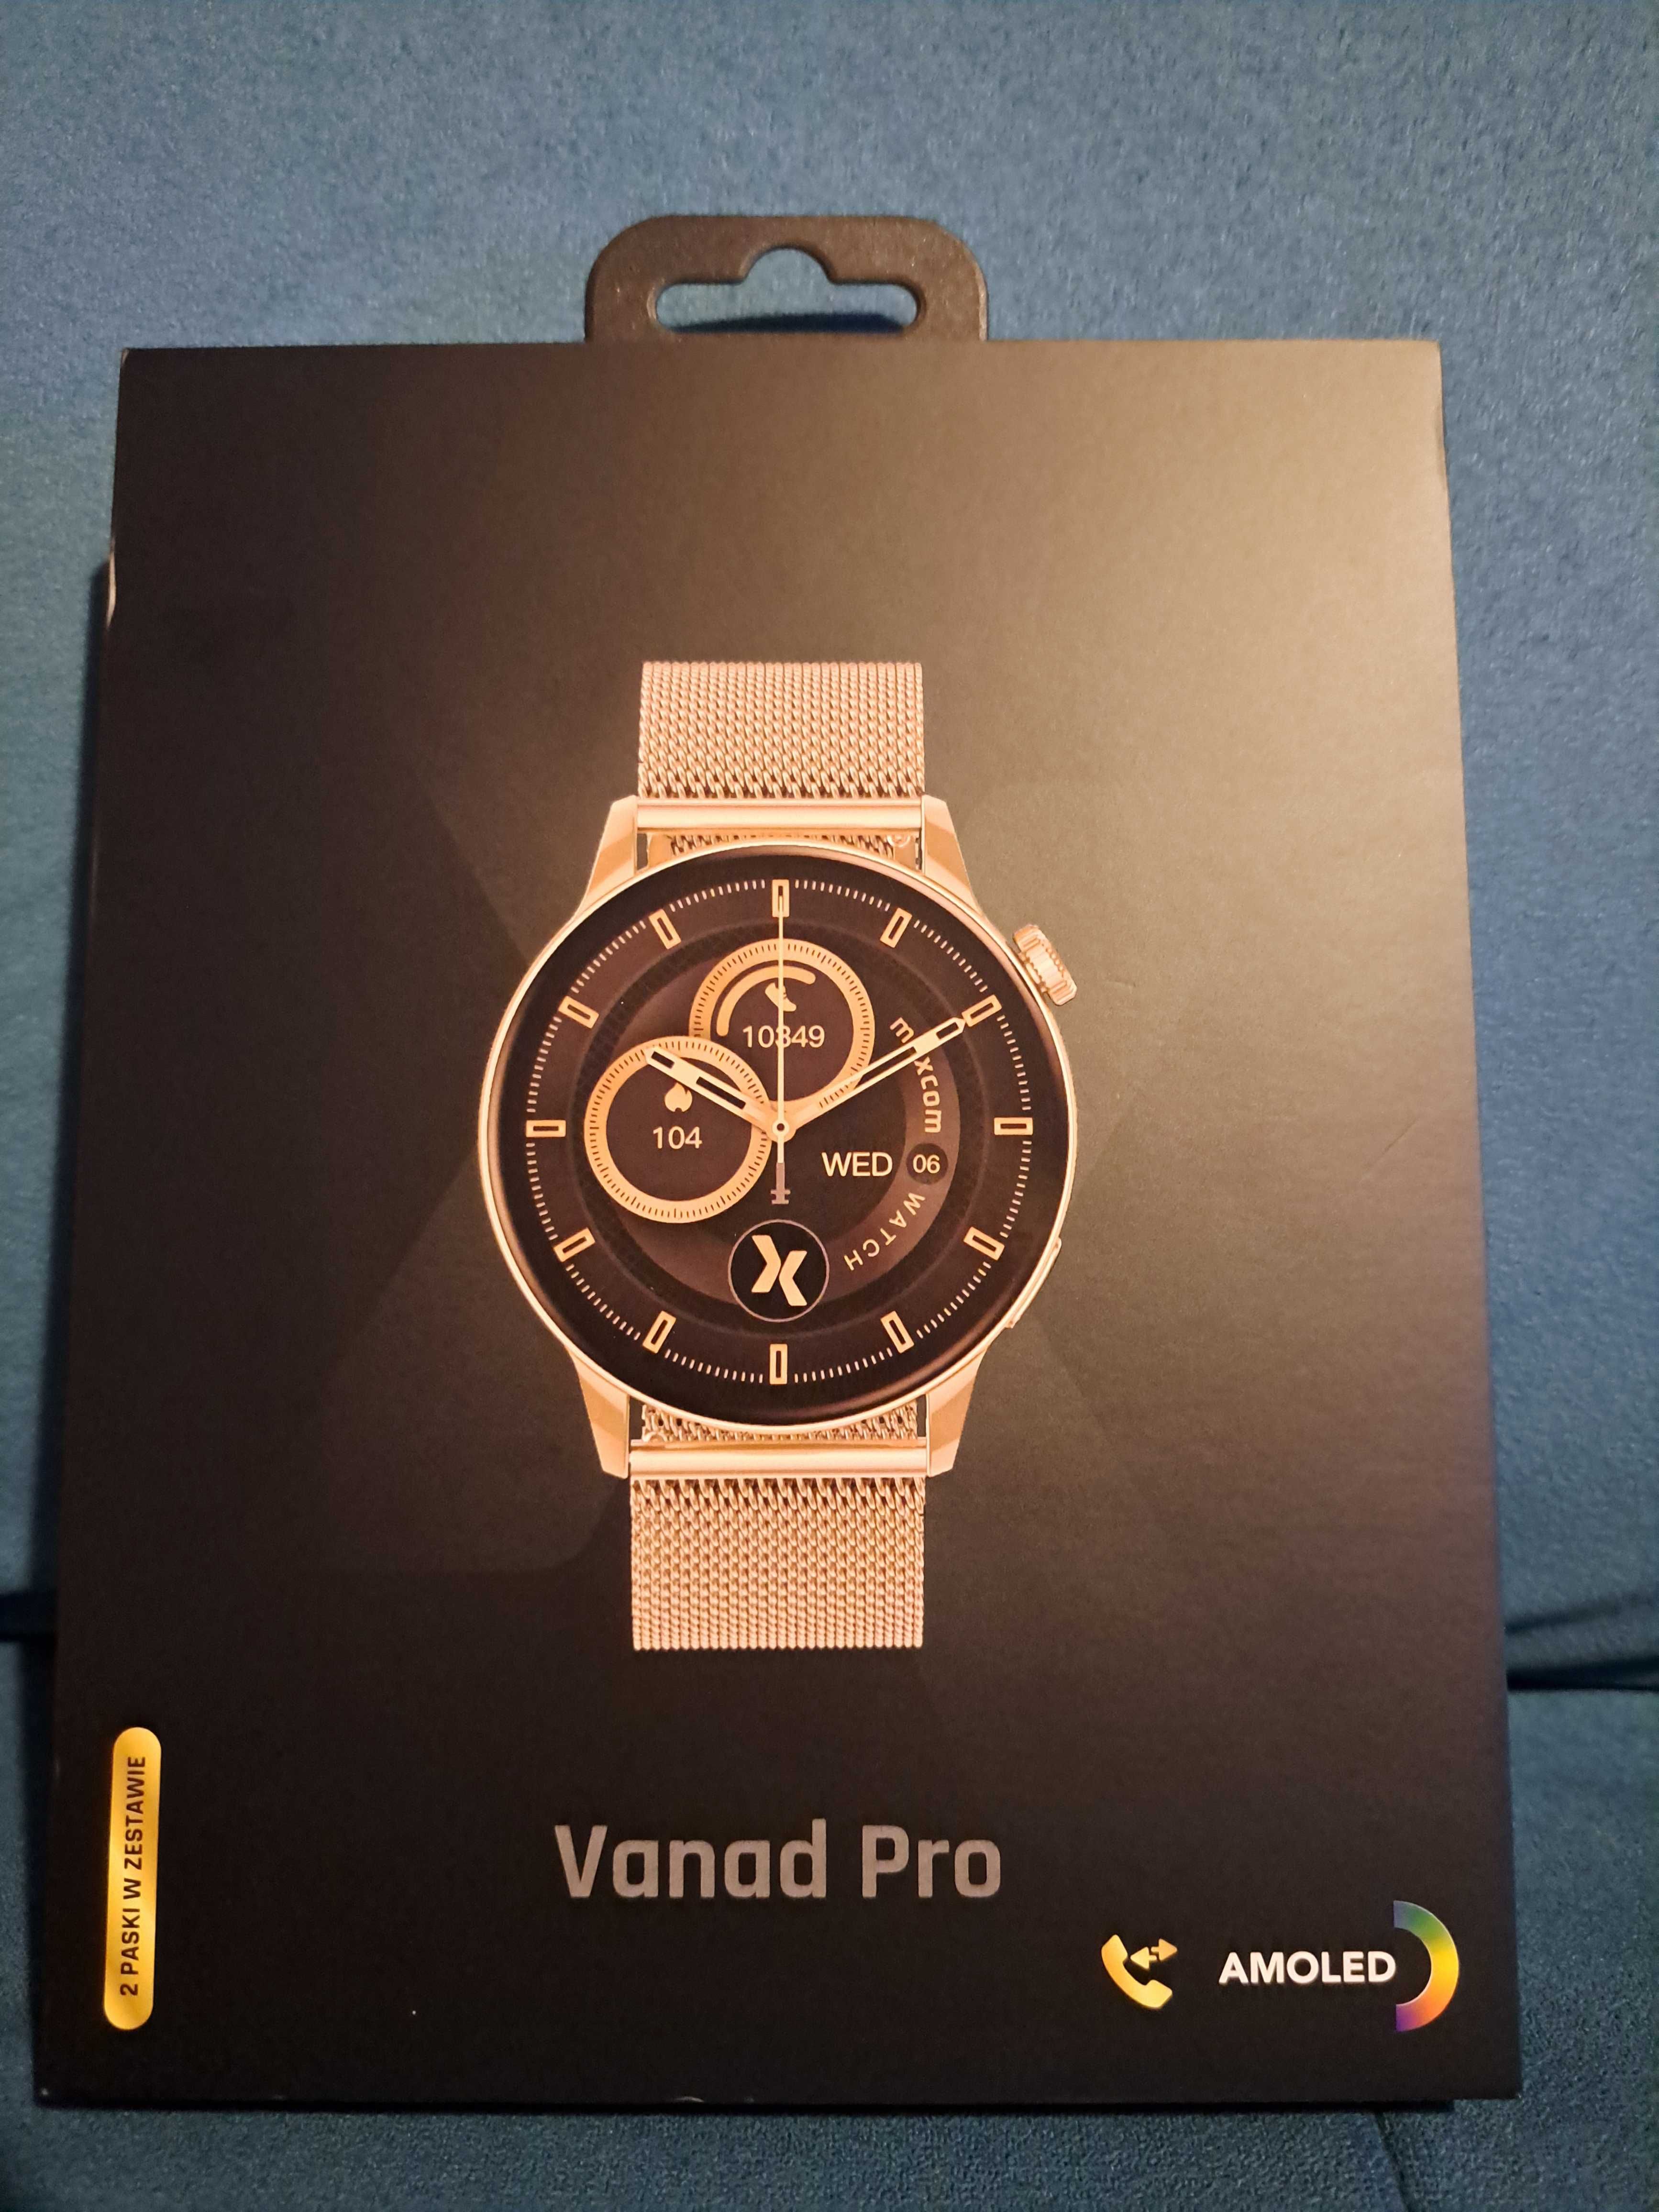 Smartwatch Maxcom FW58 Vanad Pro 46mm gold damski NOWY 2 lataGwarancji